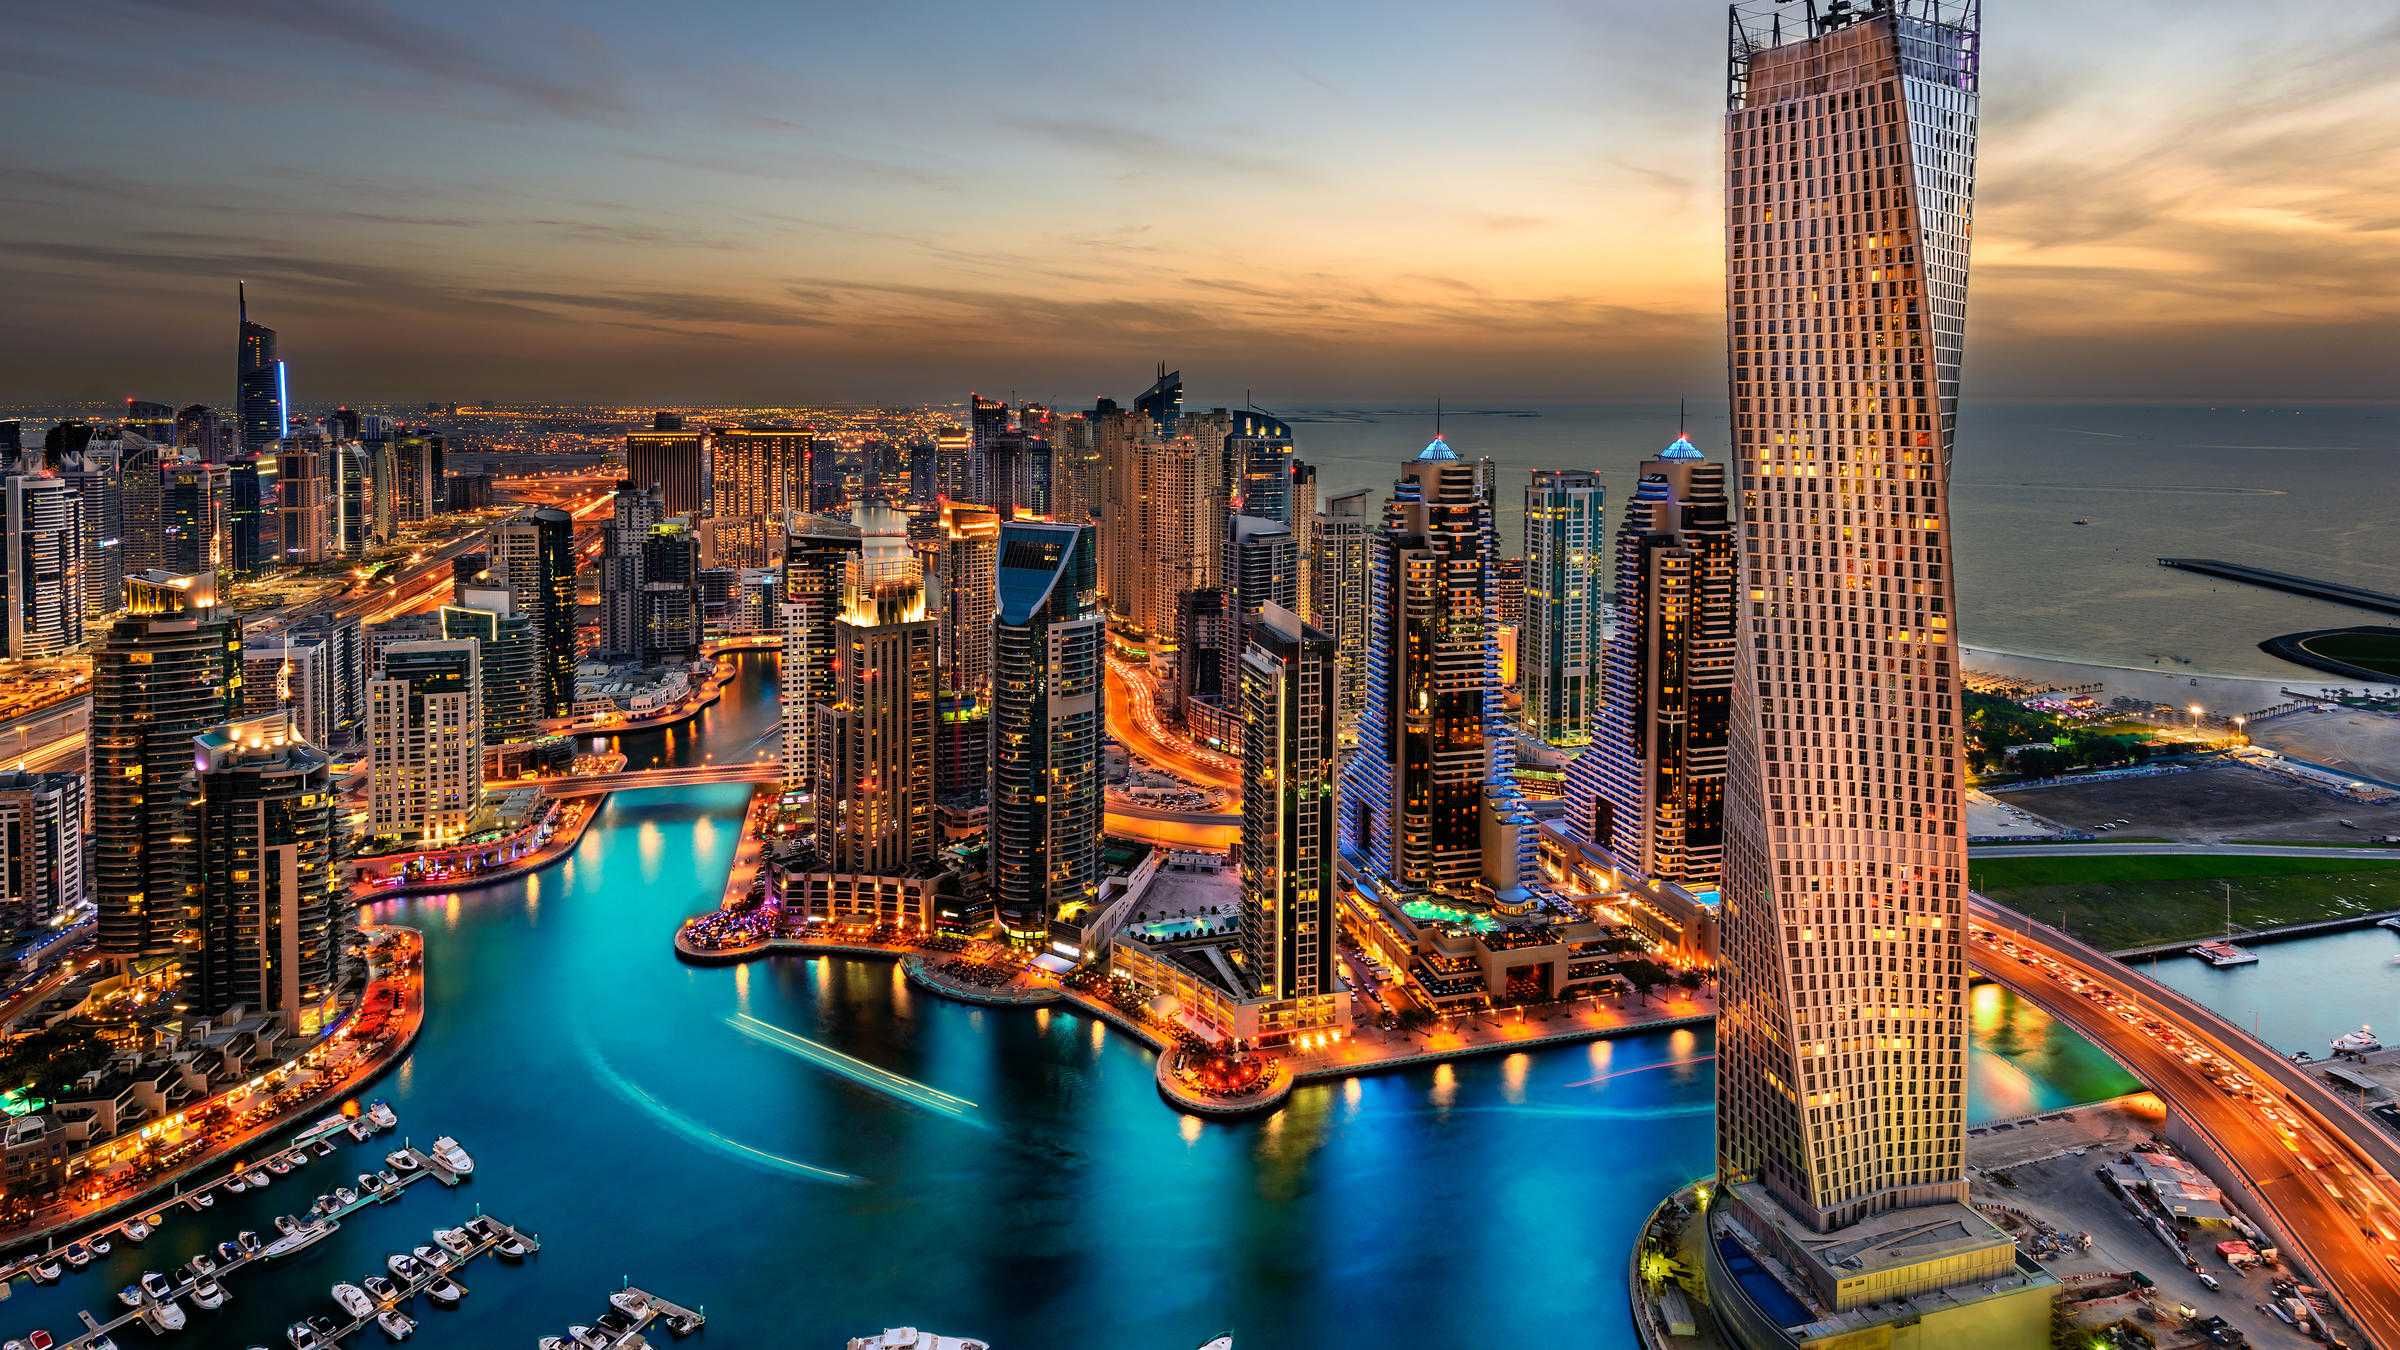 ТОП-БИЗНЕС в собственность-АН в Дубае!Инвестиции и покупка жилья в ОАЭ